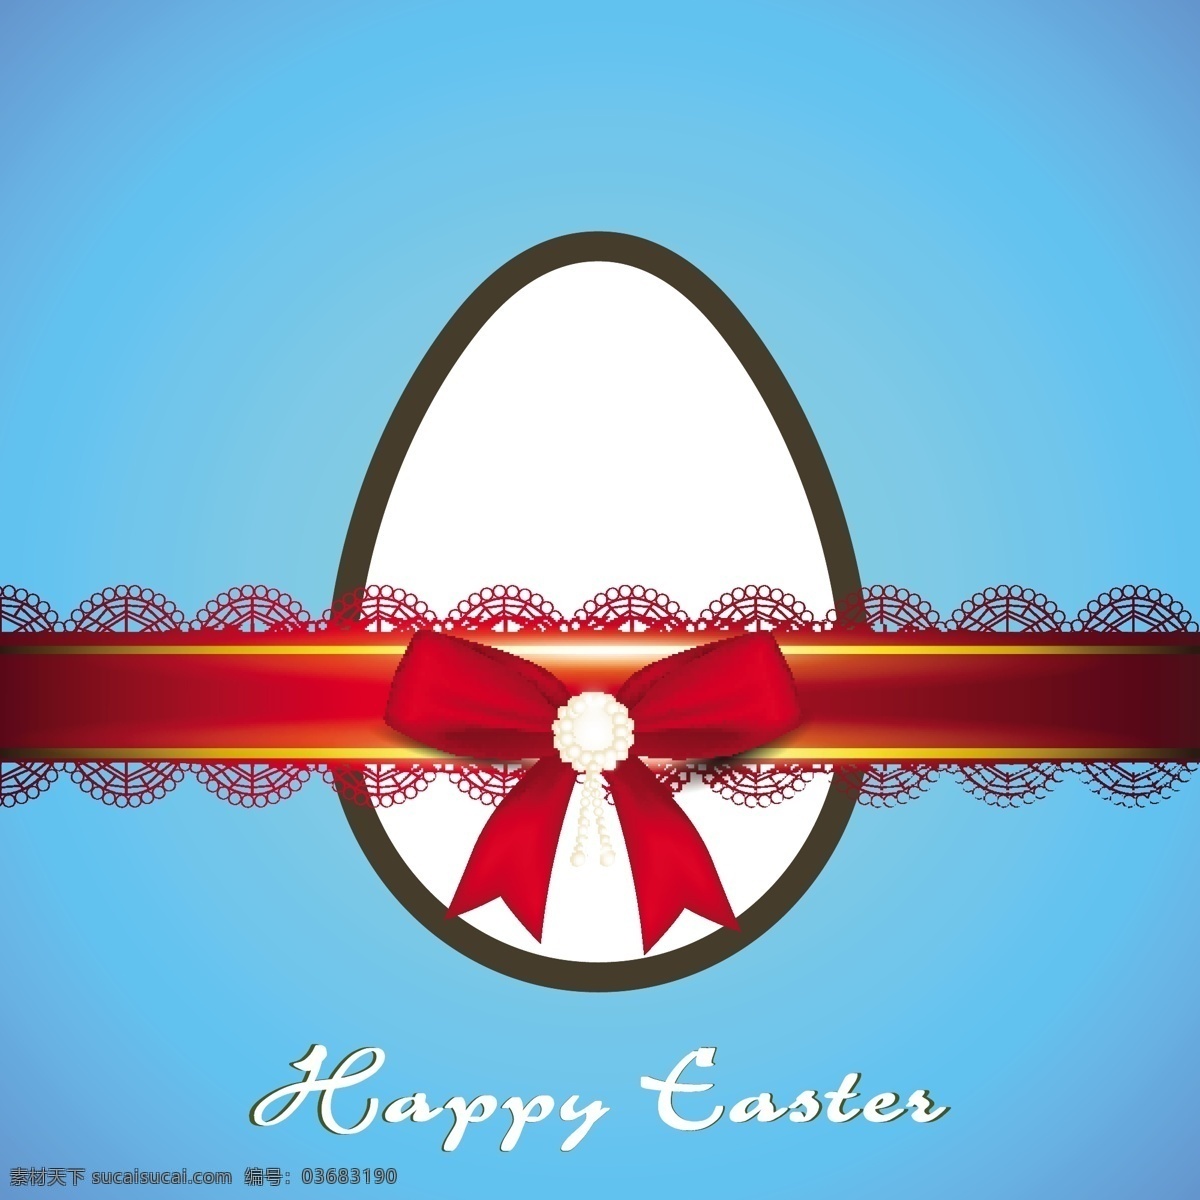 复活节 快乐 背景 卡 蓝色 上 红色 缎带 创意 装饰 蛋 矢量图 日常生活